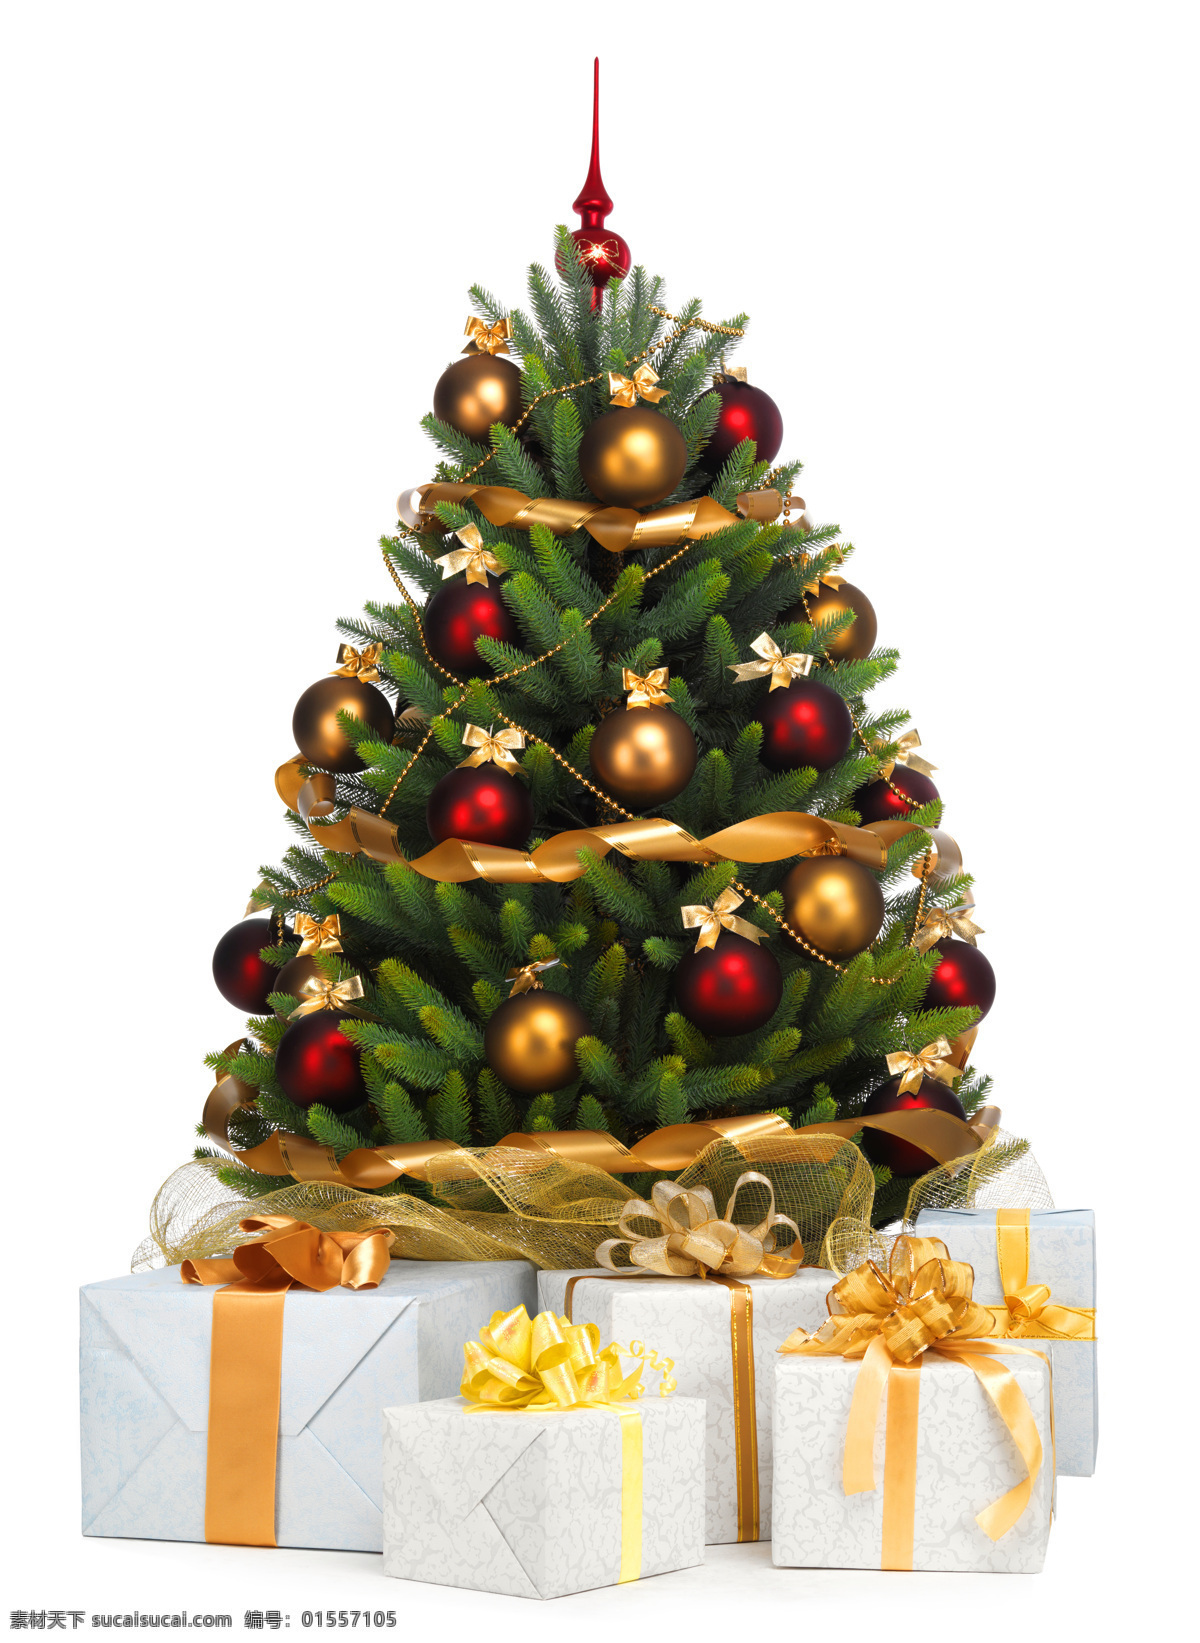 礼盒 圣诞树 圣诞球 圣诞节 节日背景 圣诞节装饰 礼物礼盒 礼盒与圣诞树 节日庆典 生活百科